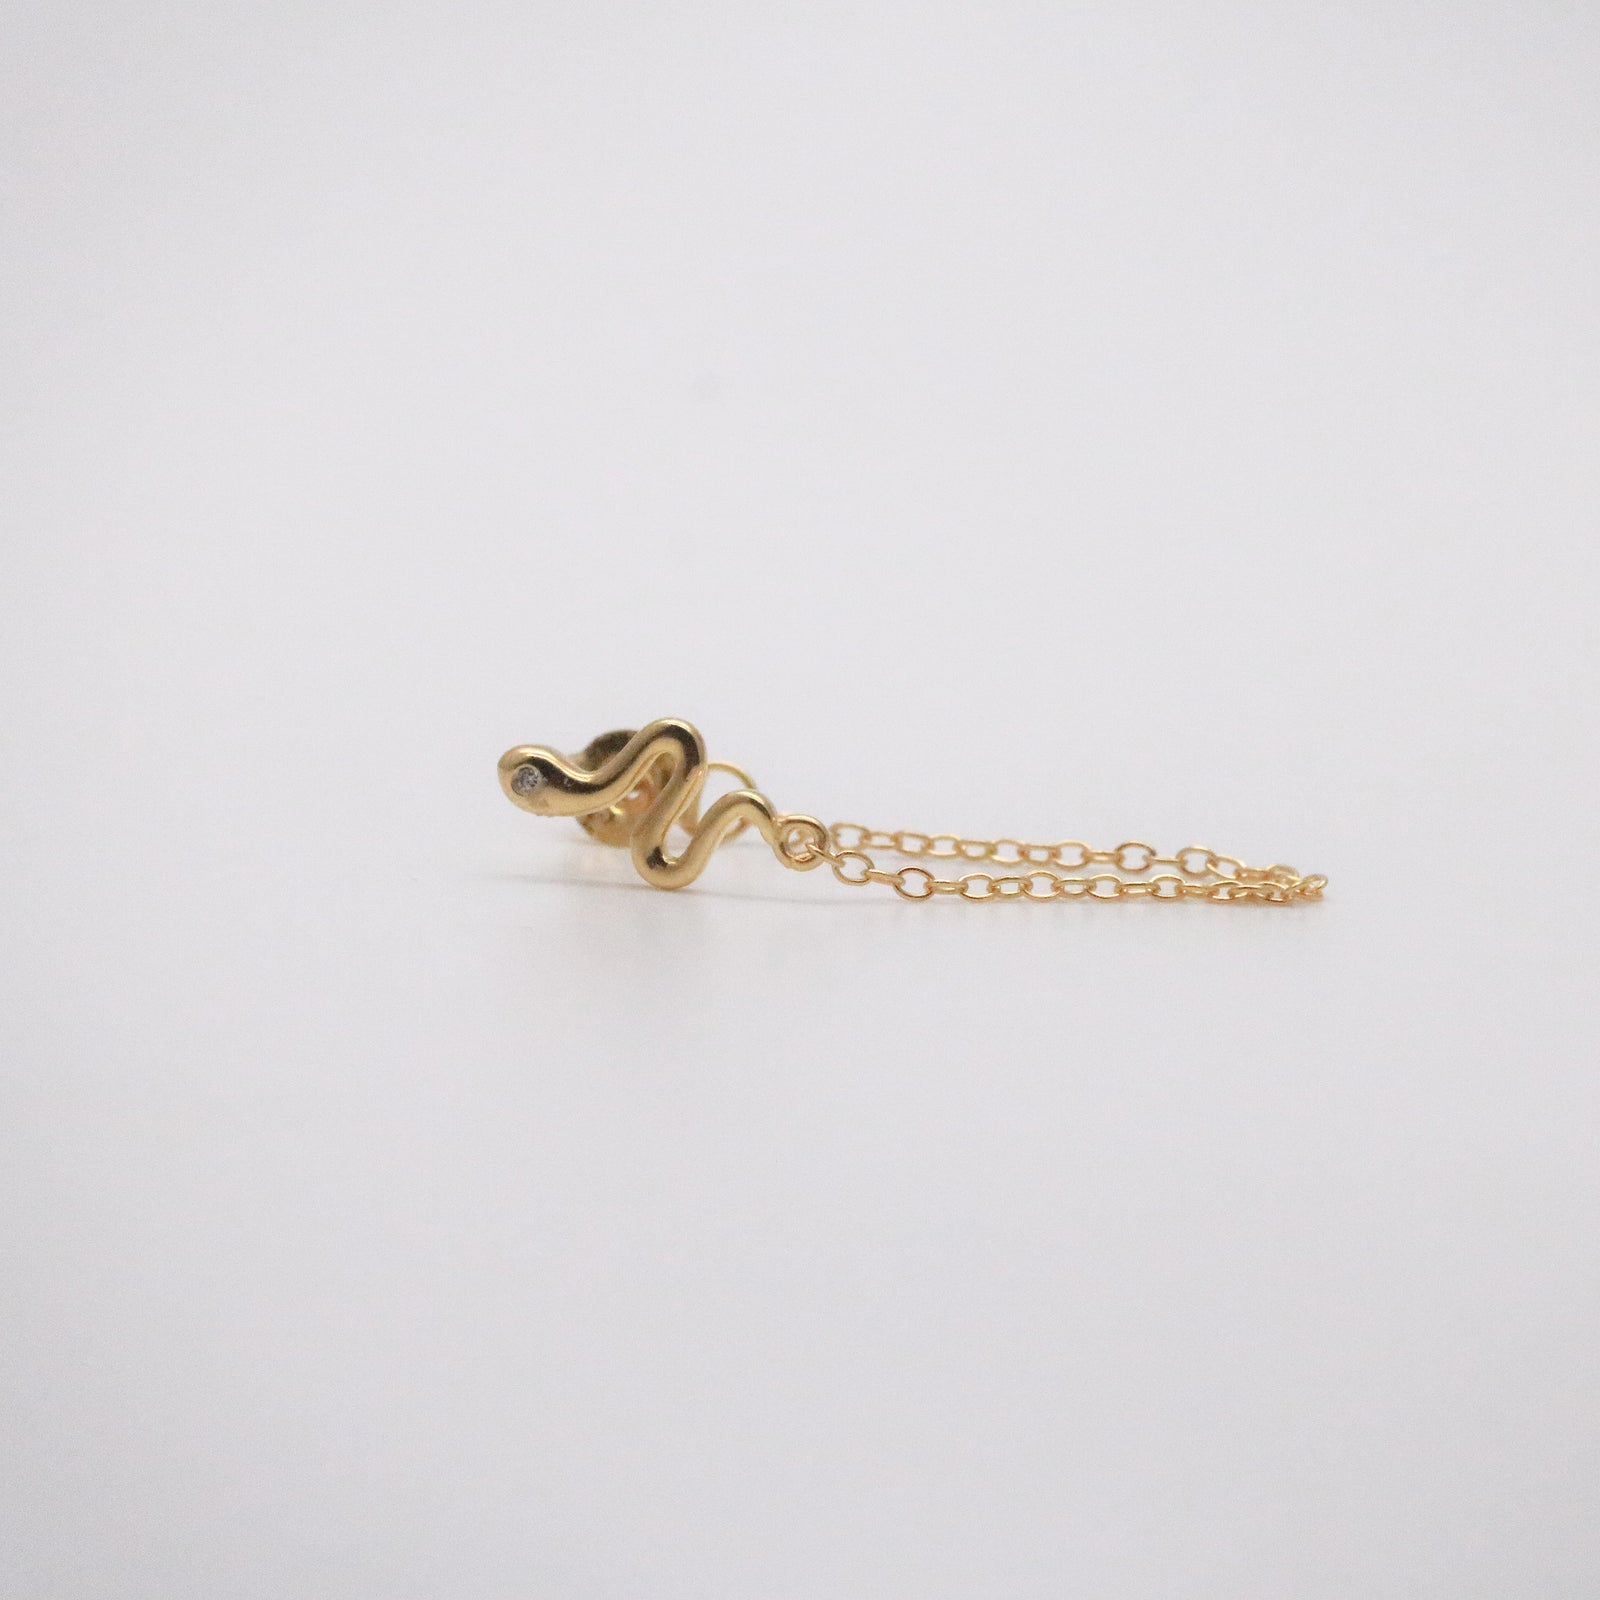 snake chain earring